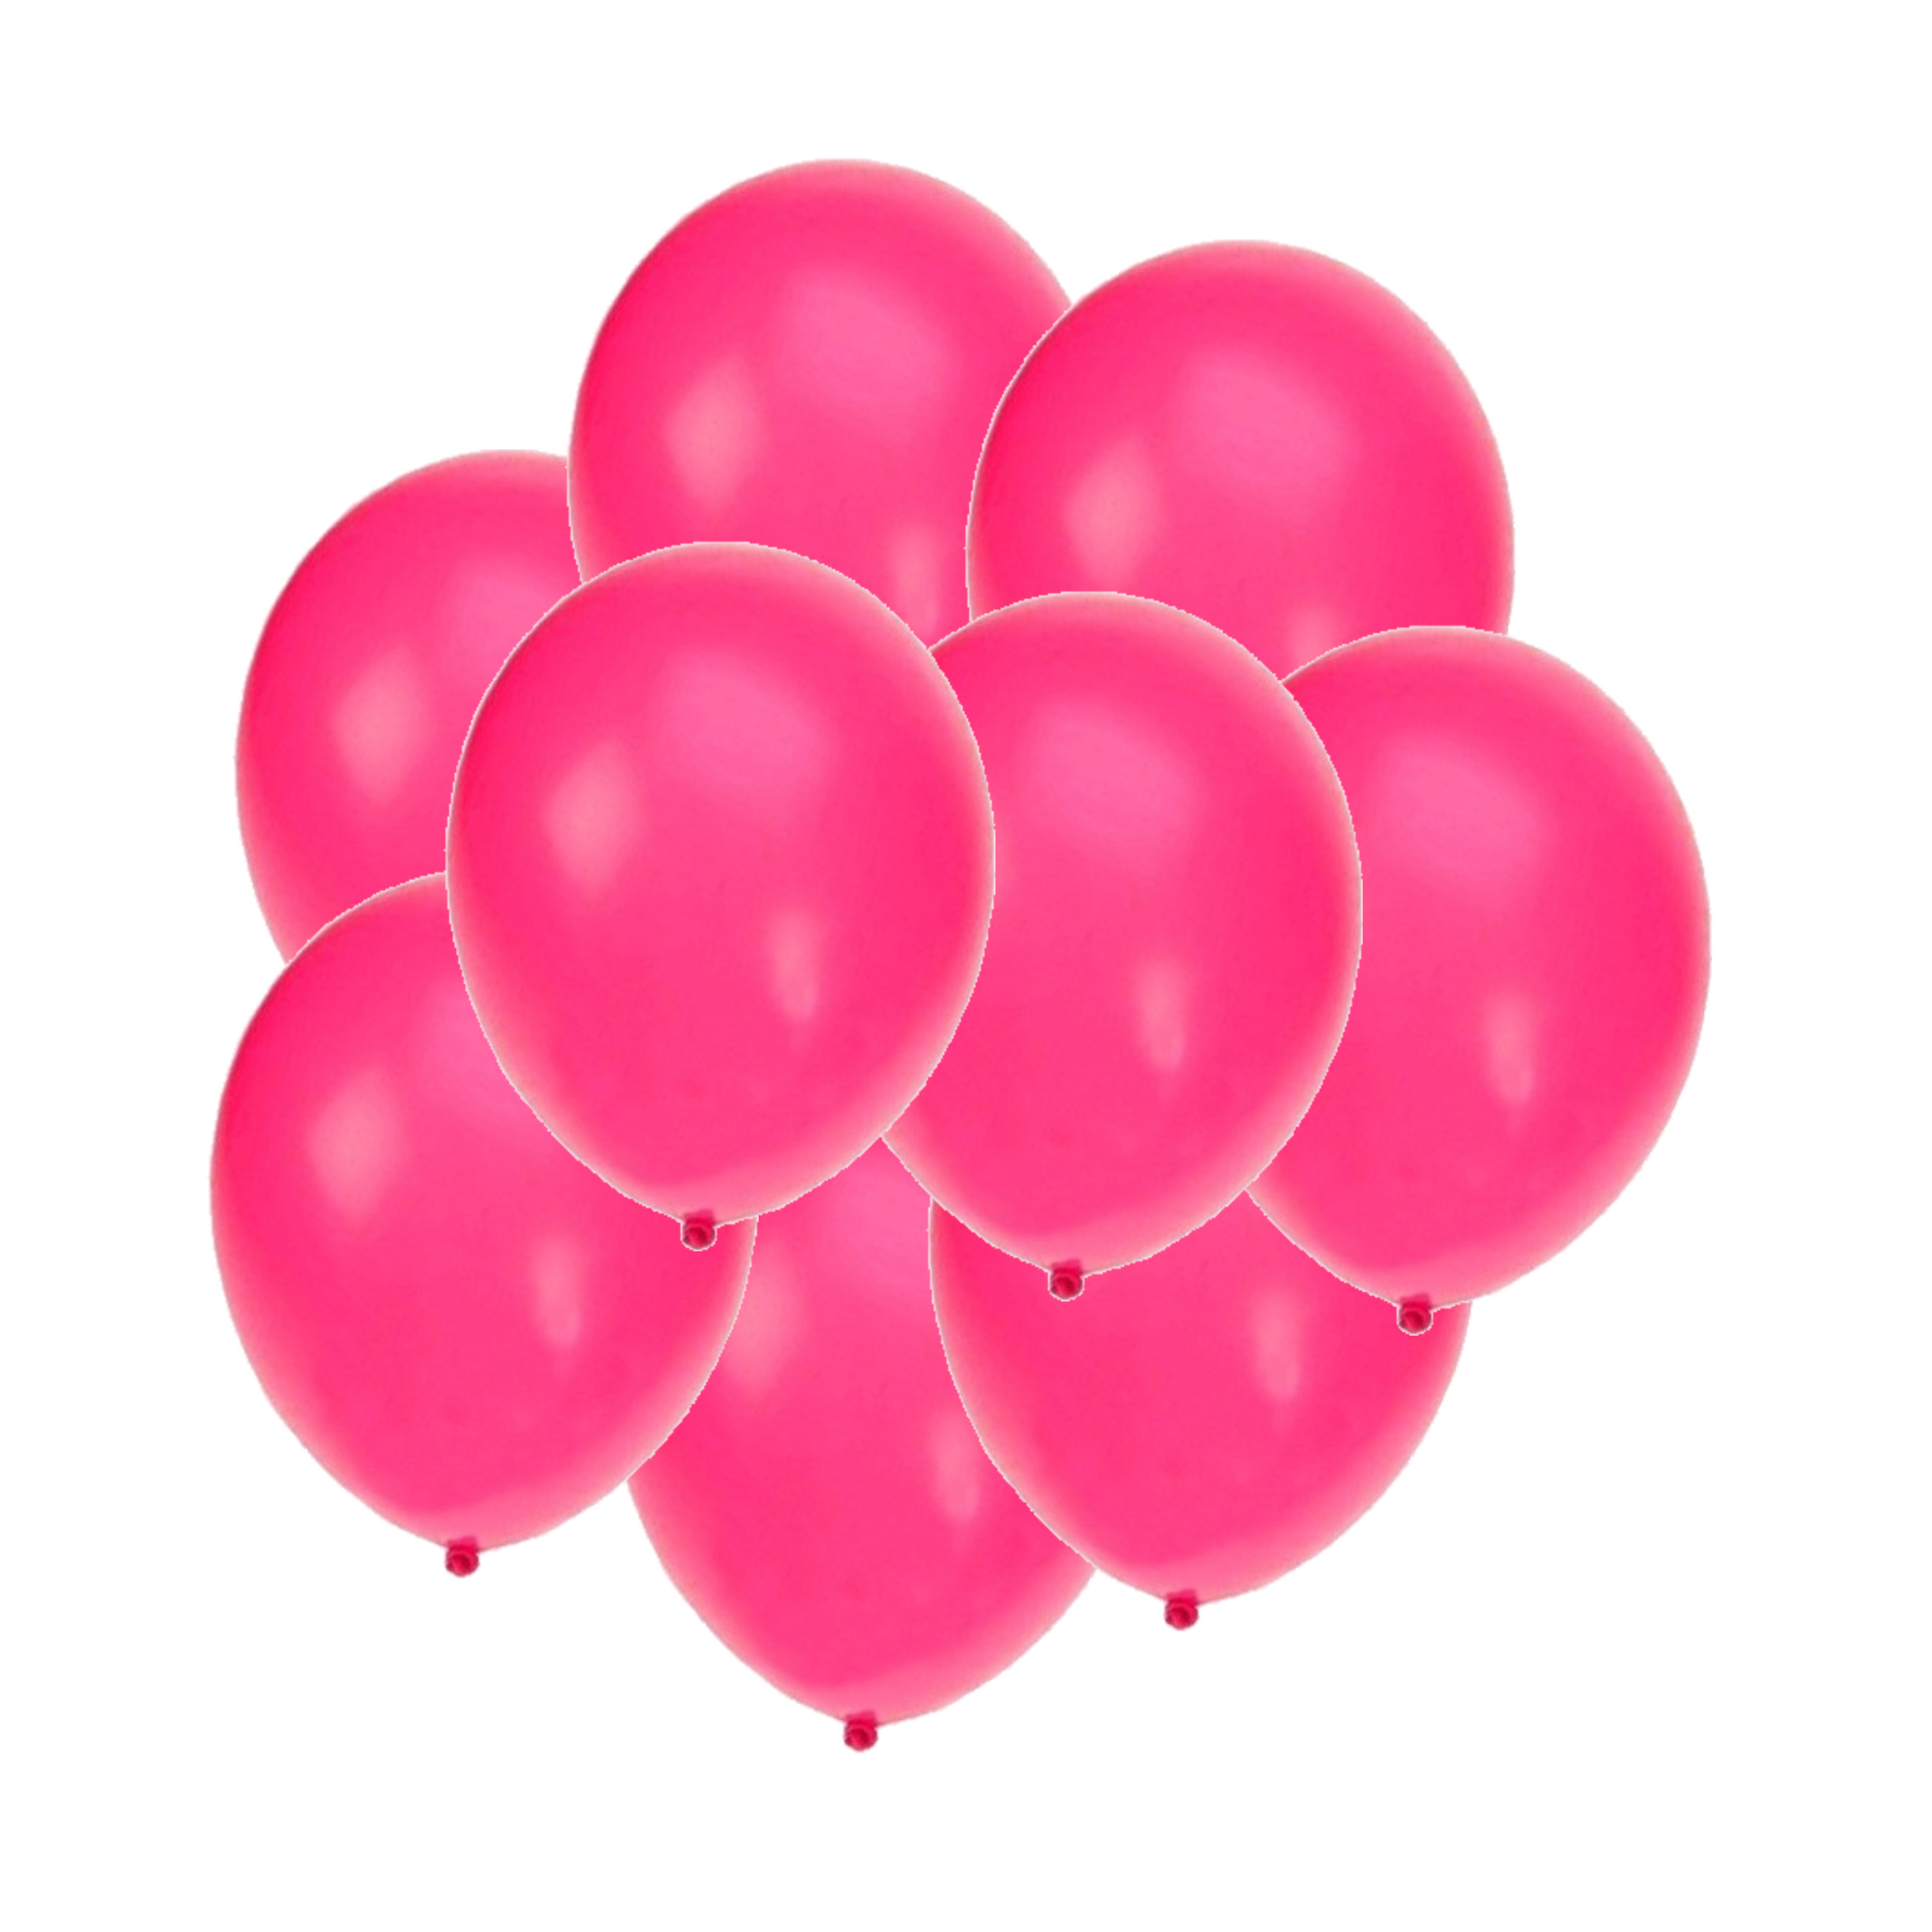 Bellatio decorations - Ballonnen knalroze/felroze 100x stuks rond 27 cm - Top Merken Winkel